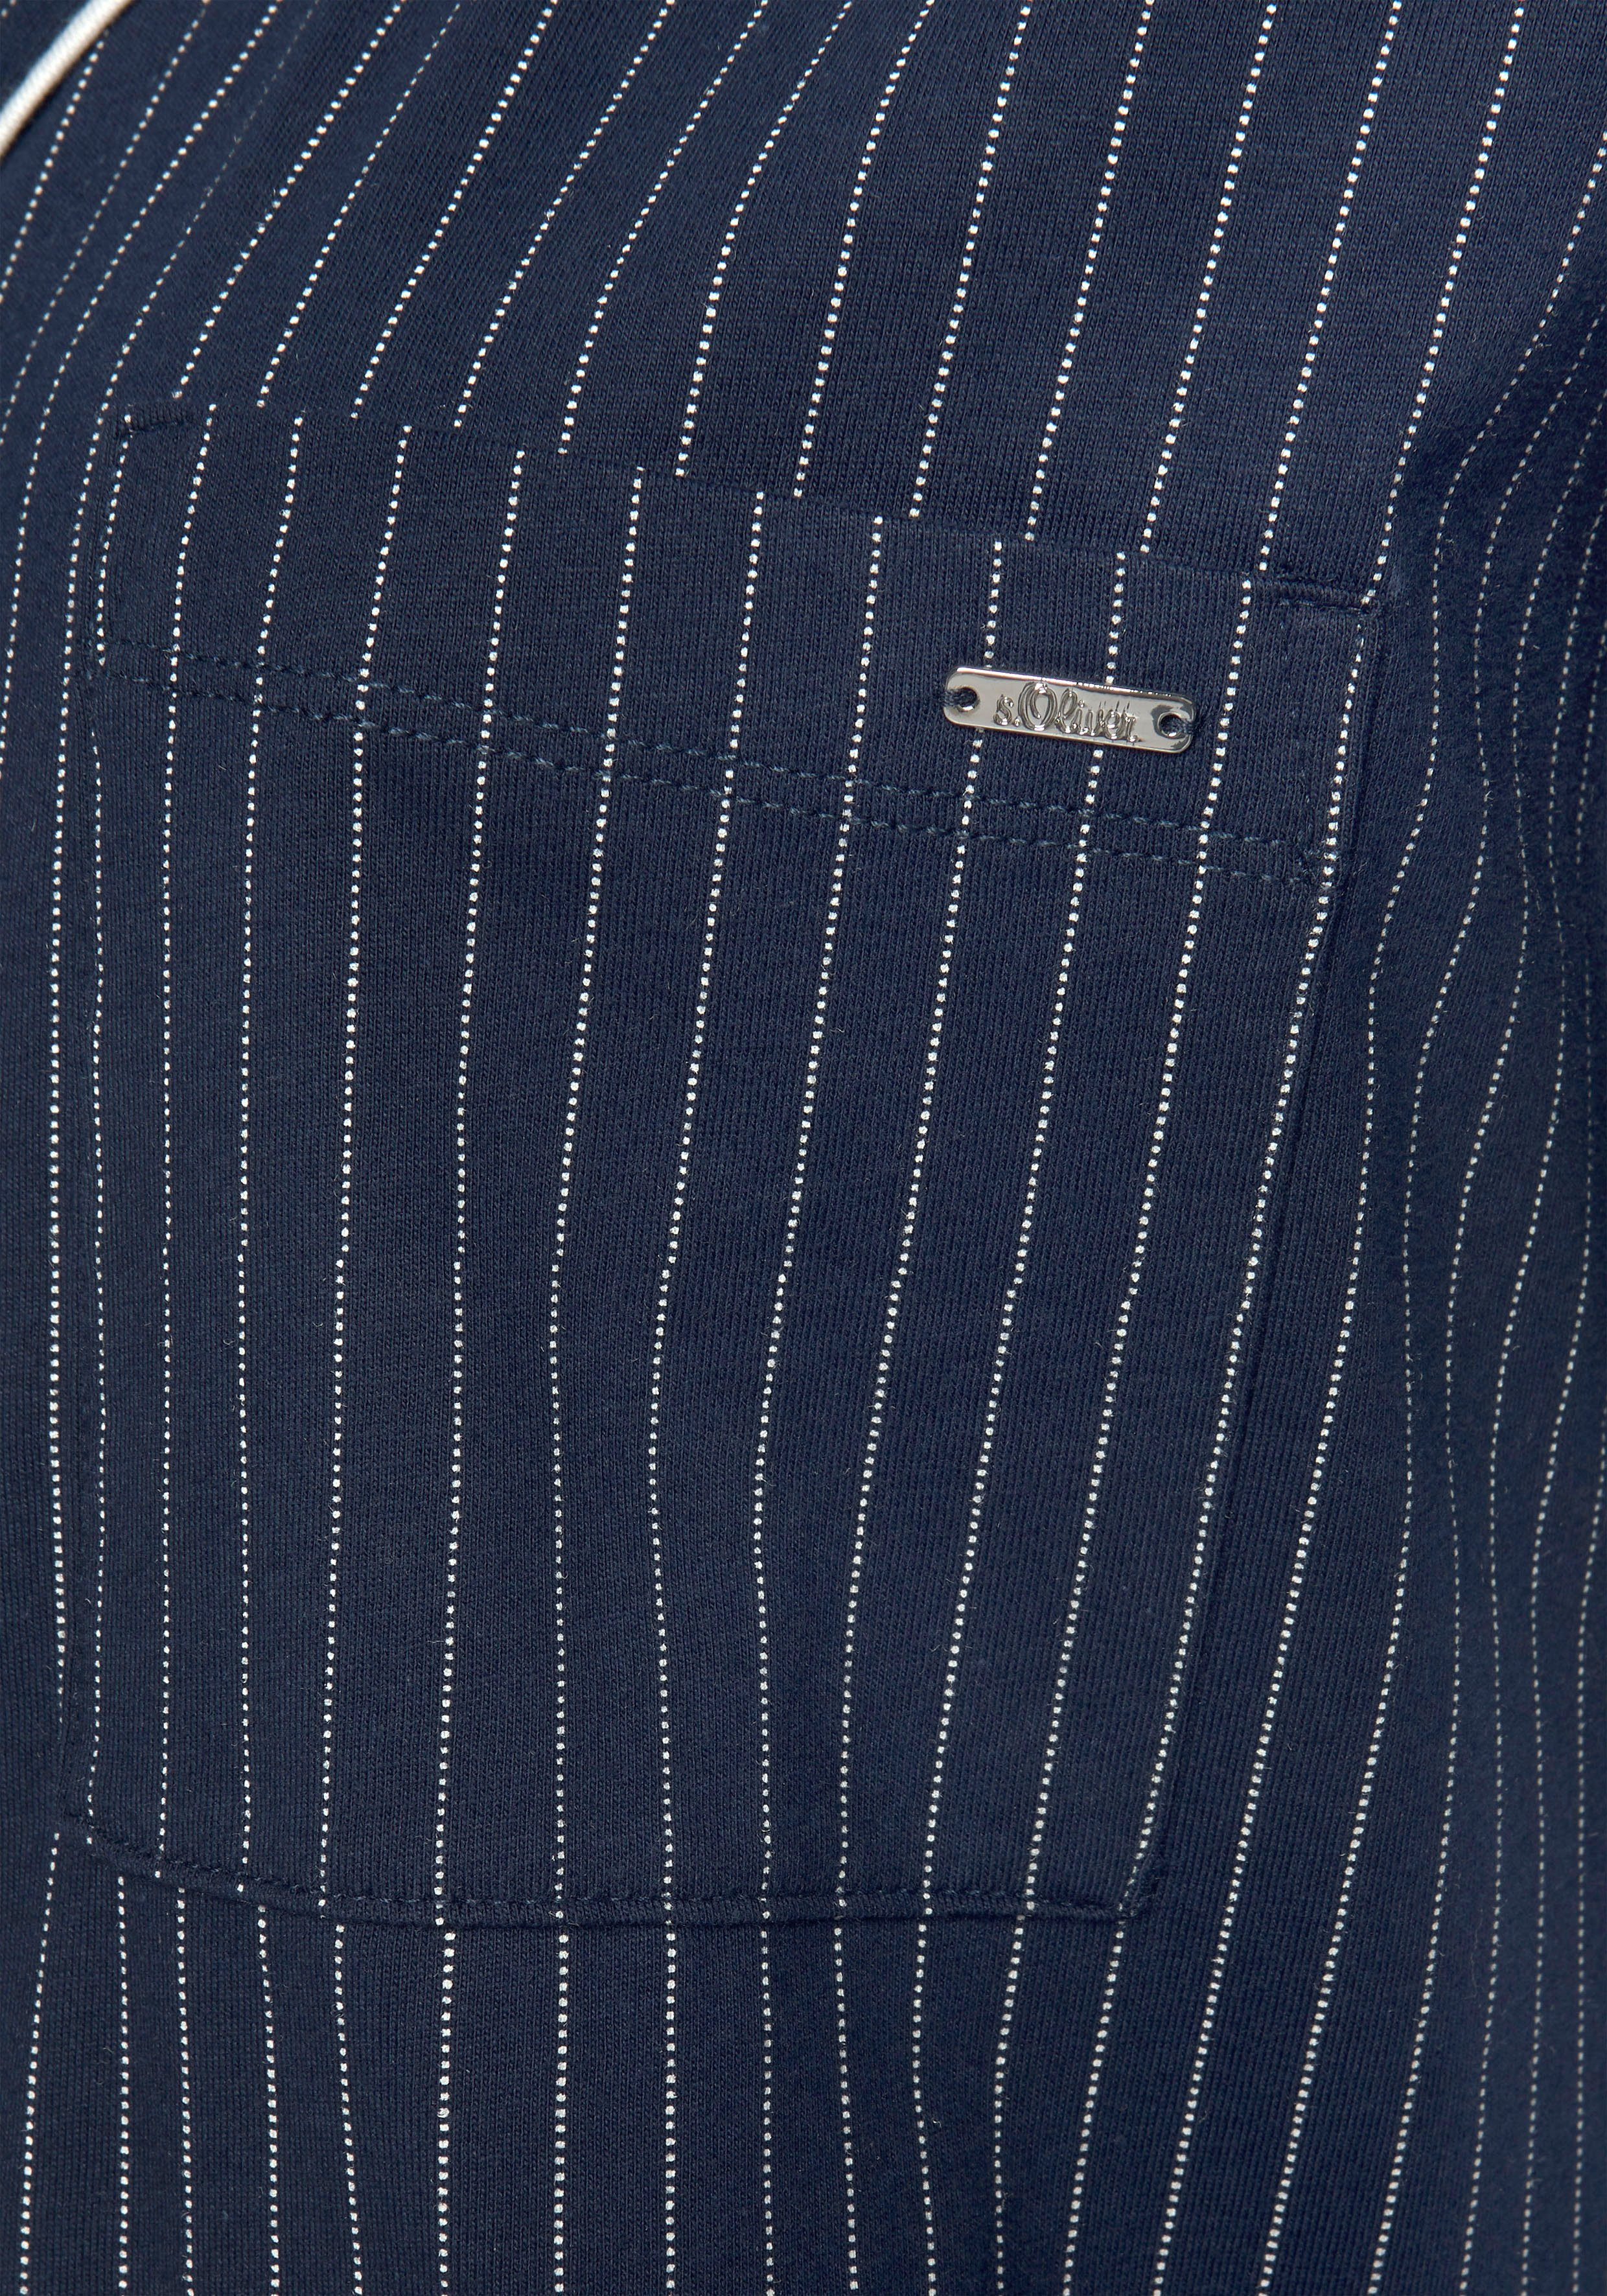 mit s.Oliver Nachthemd Brusttasche aufgesetzter dunkelblau-gestreift